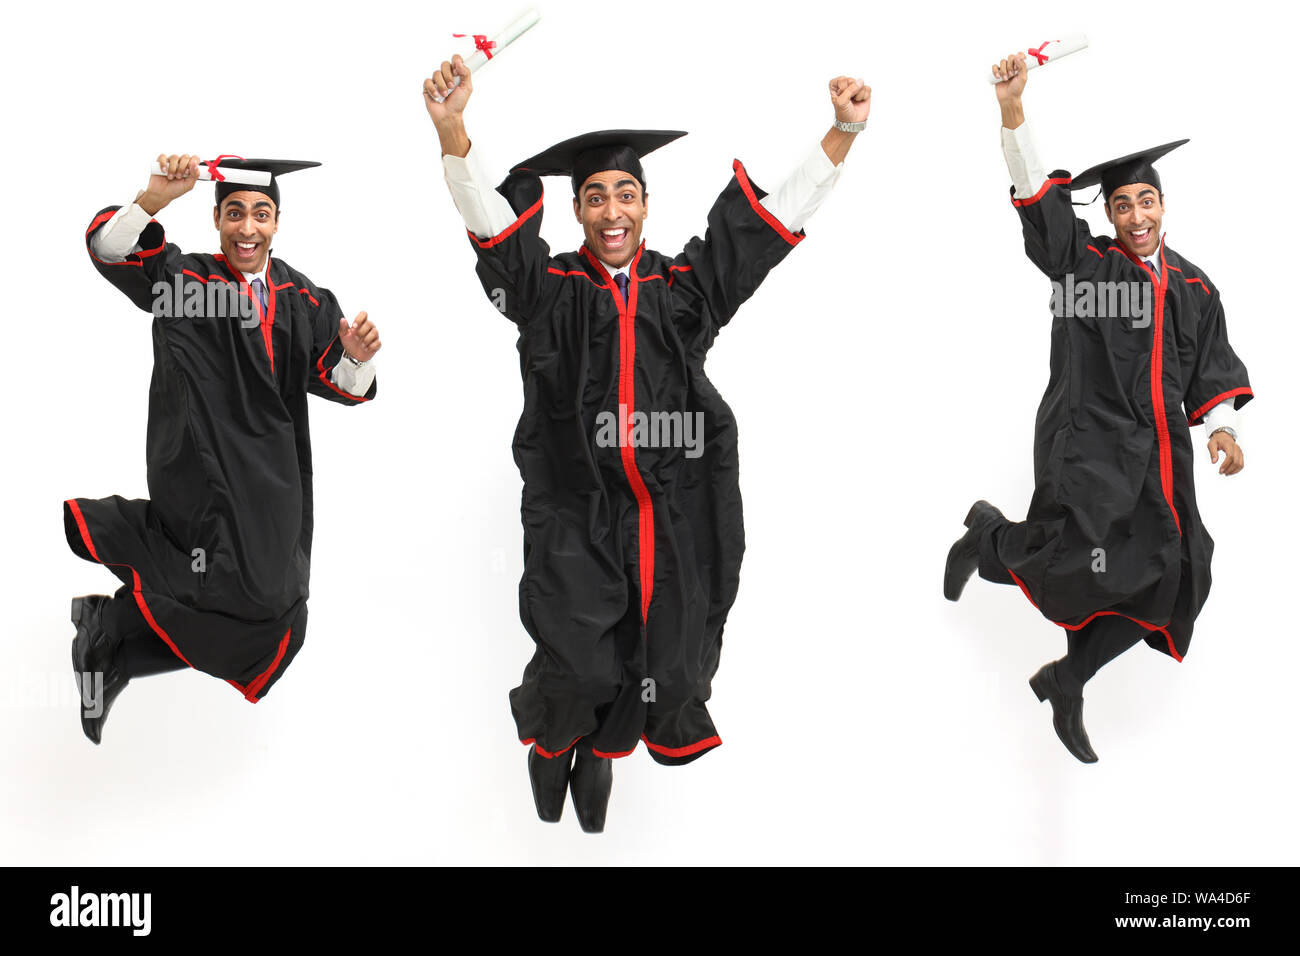 Immagini multiple di uno studente universitario che celebra la laurea Foto Stock